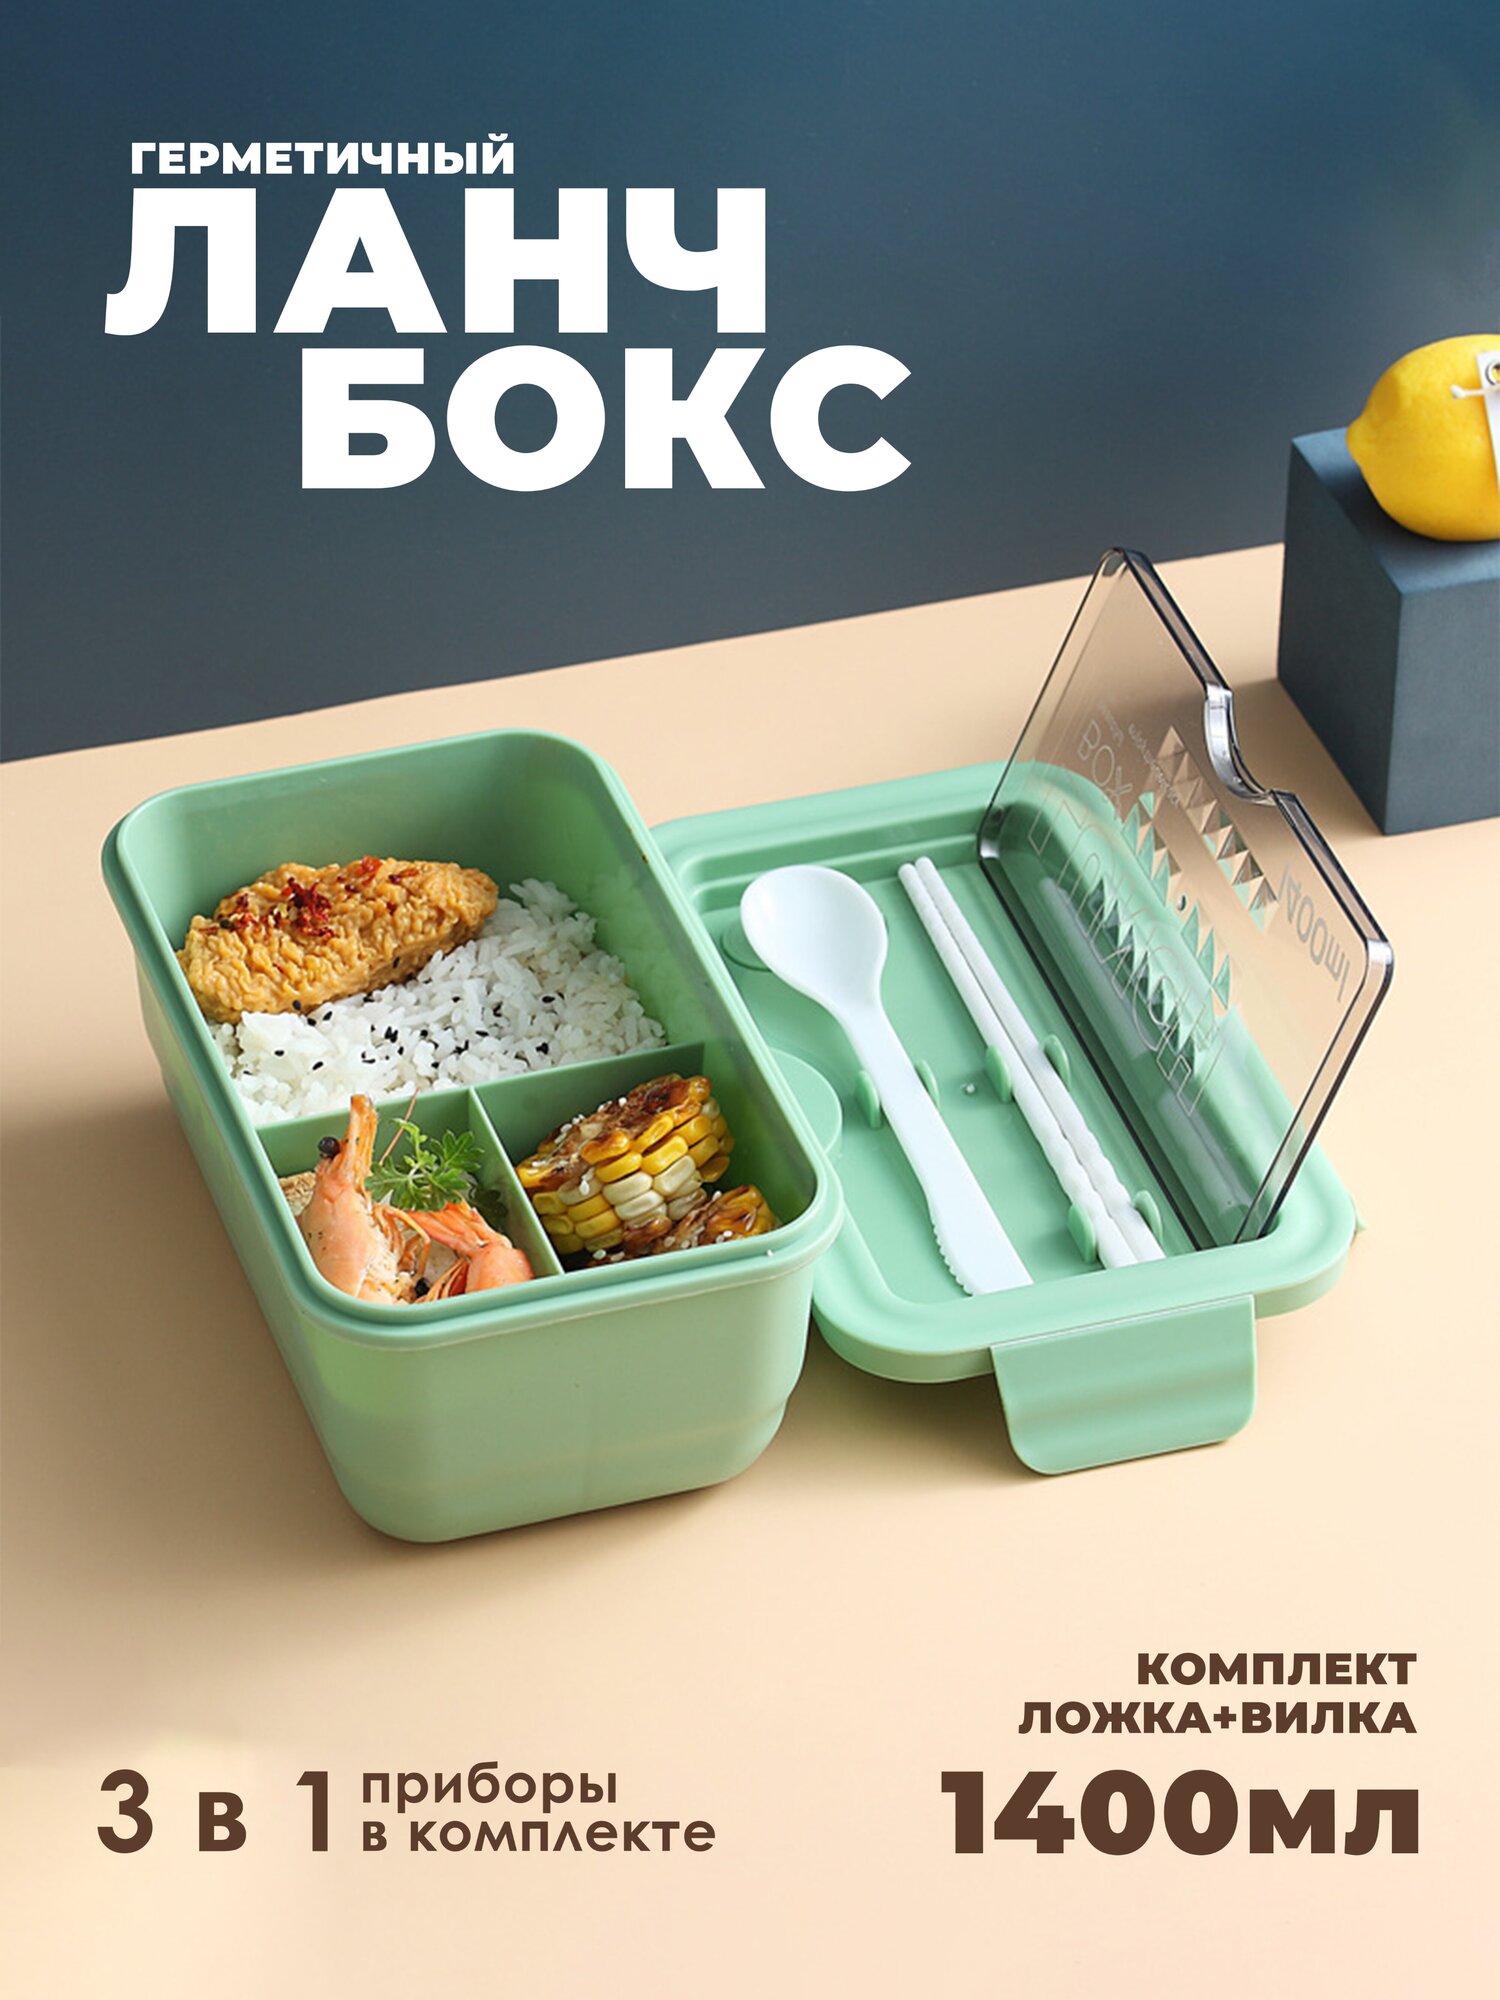 IBRICO/Ланч бокс для еды/приборами/отделениями/контейнер для продуктов/1400мл - фотография № 1